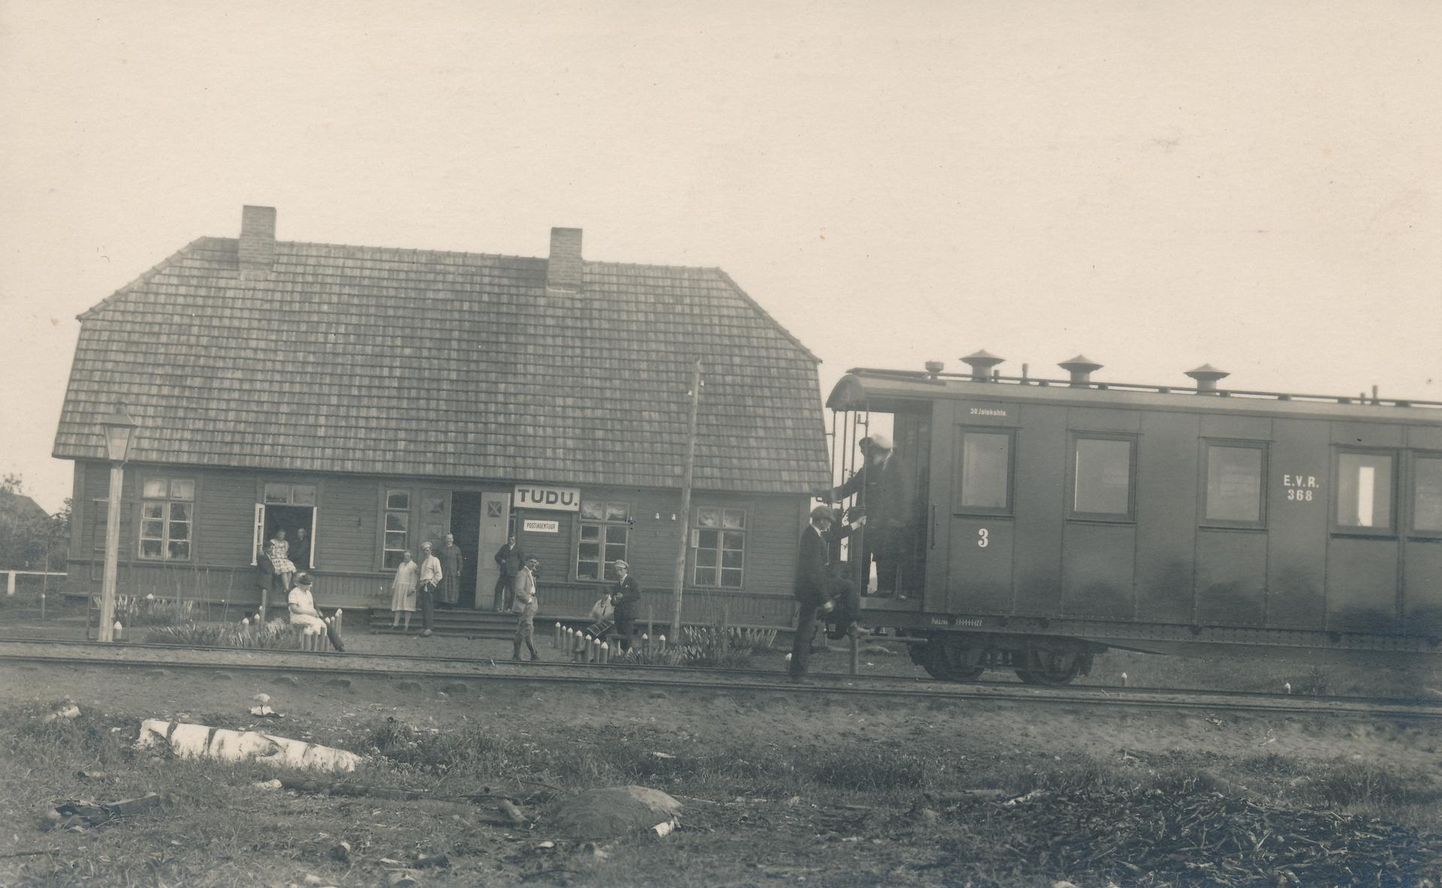 See foto Tudu raudteejaamast peaks olema tehtud 1927. aastal. Kas ka siis pidi pileti ostmiseks lapse ette näitama, pole teada. Ilmselt siiski mitte.